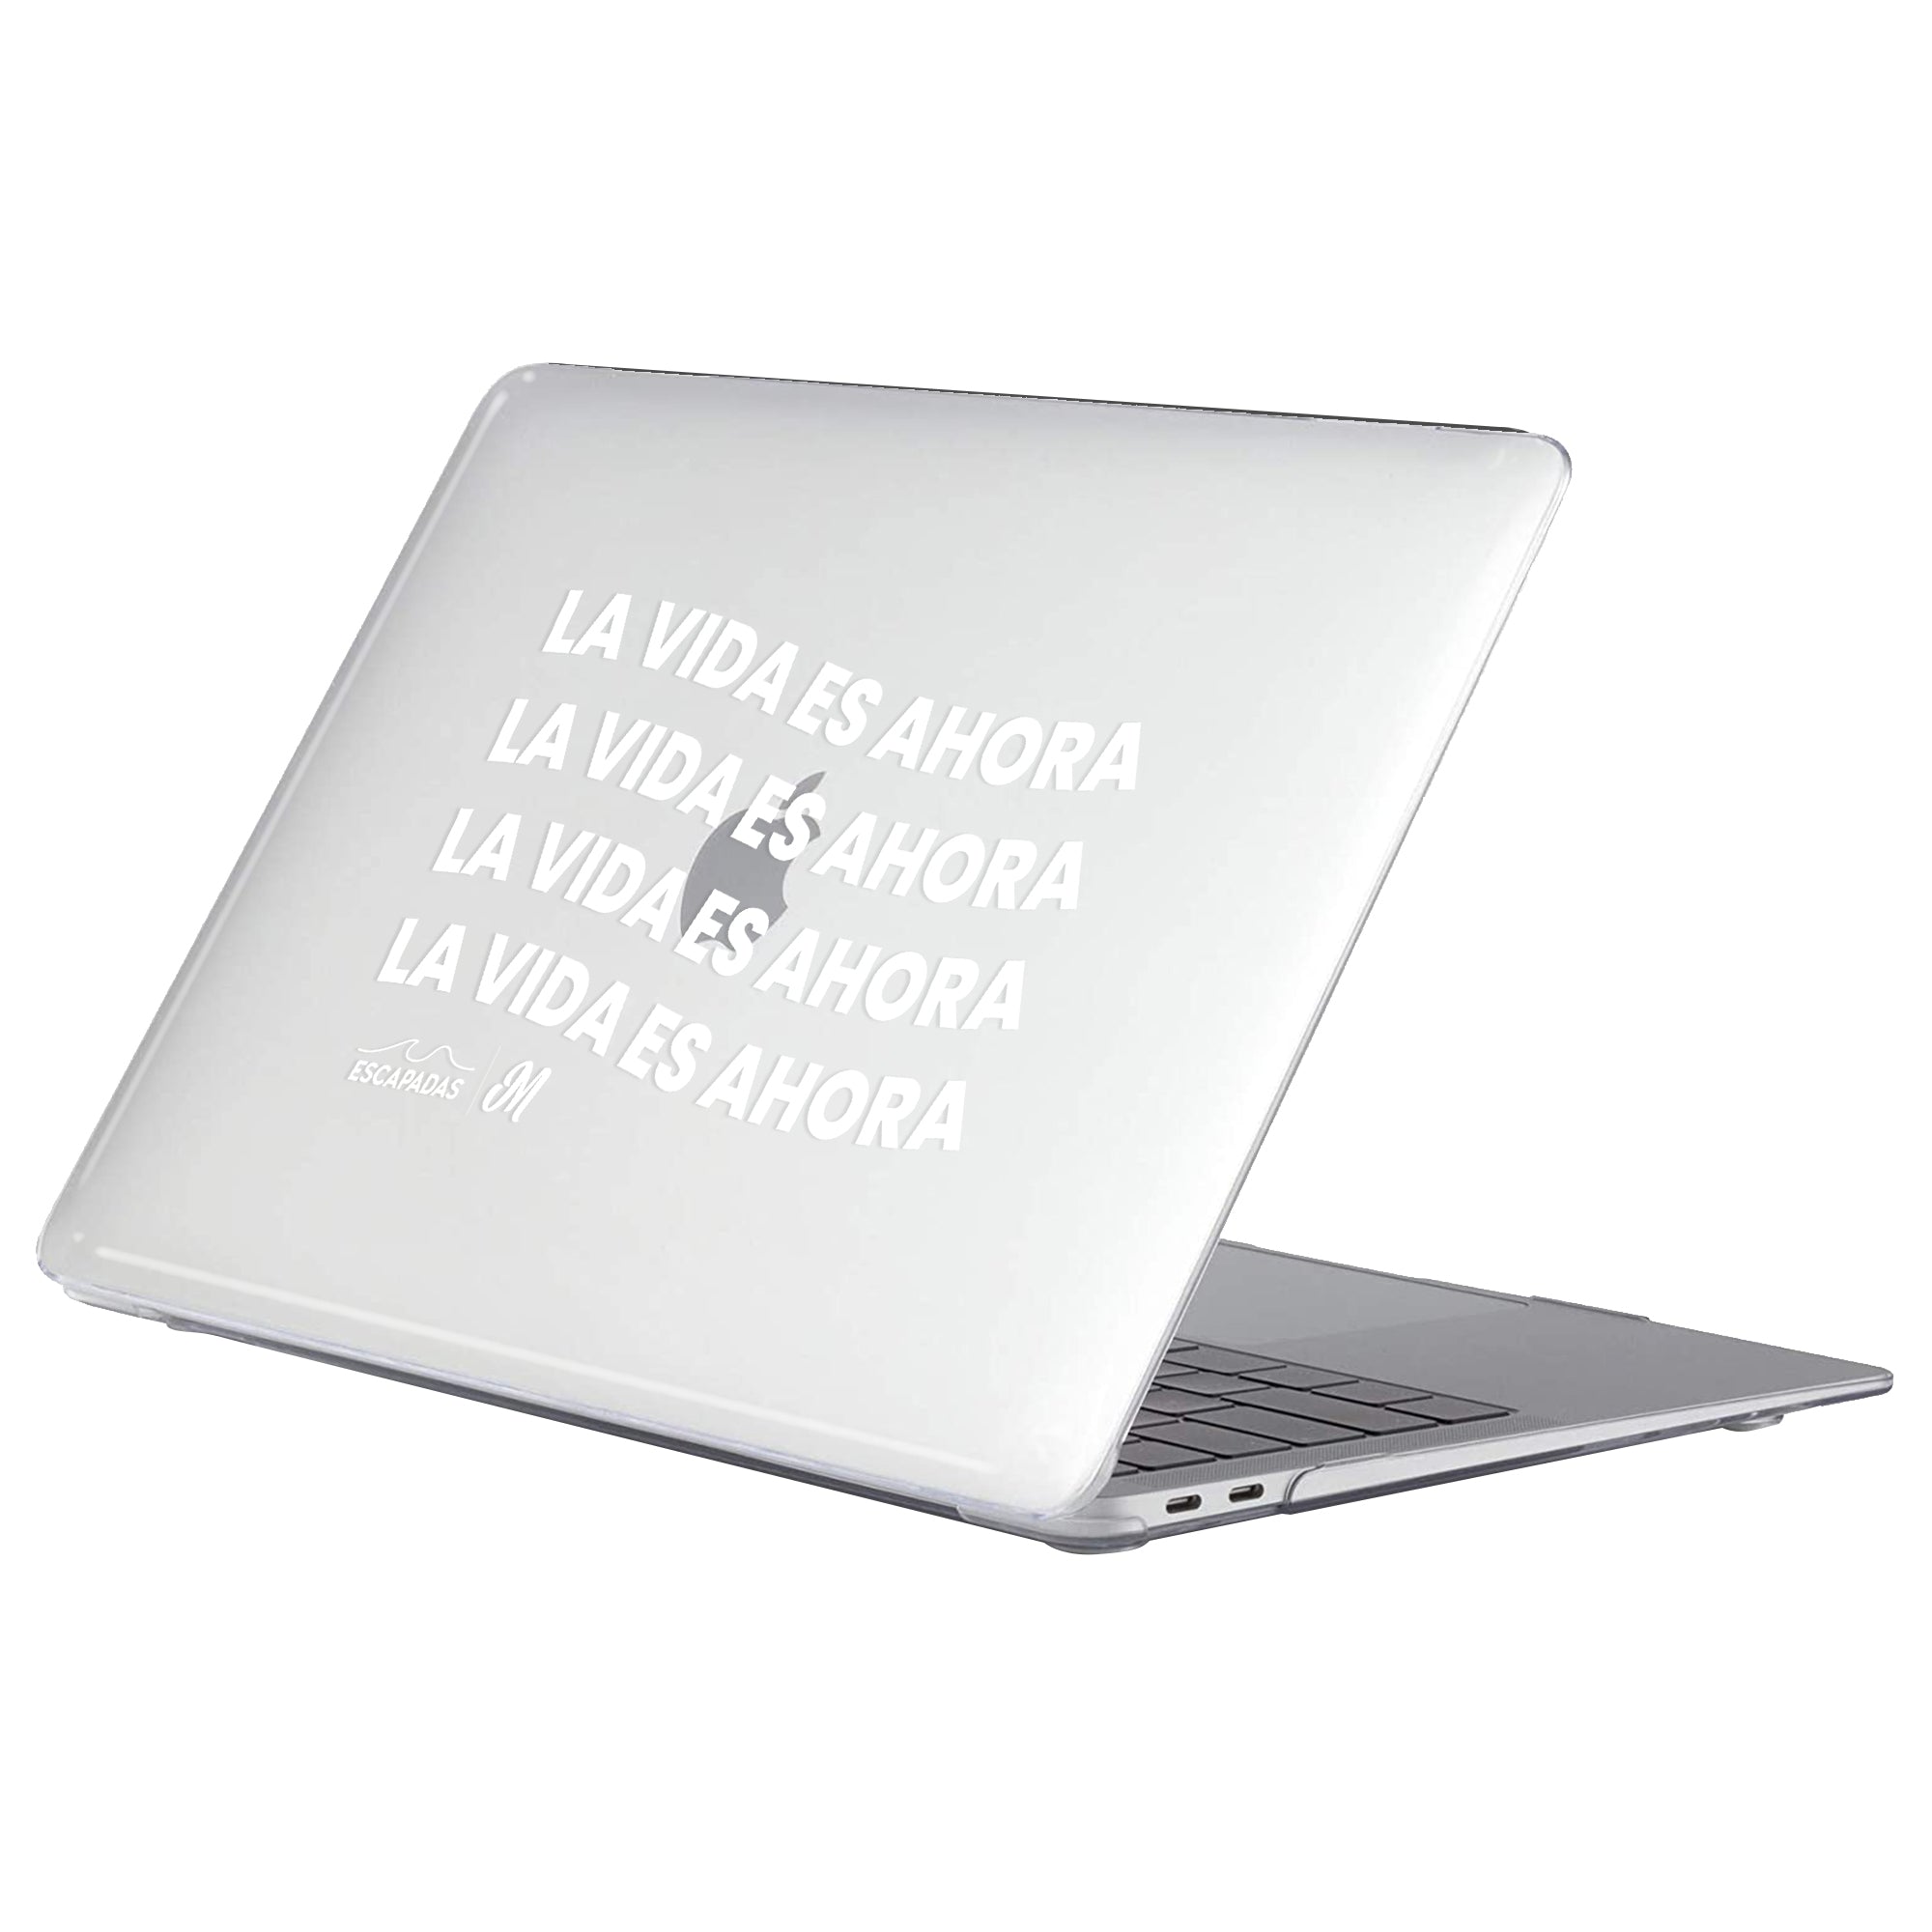 La Vida es Ahora MacBook Case - Mandala Cases